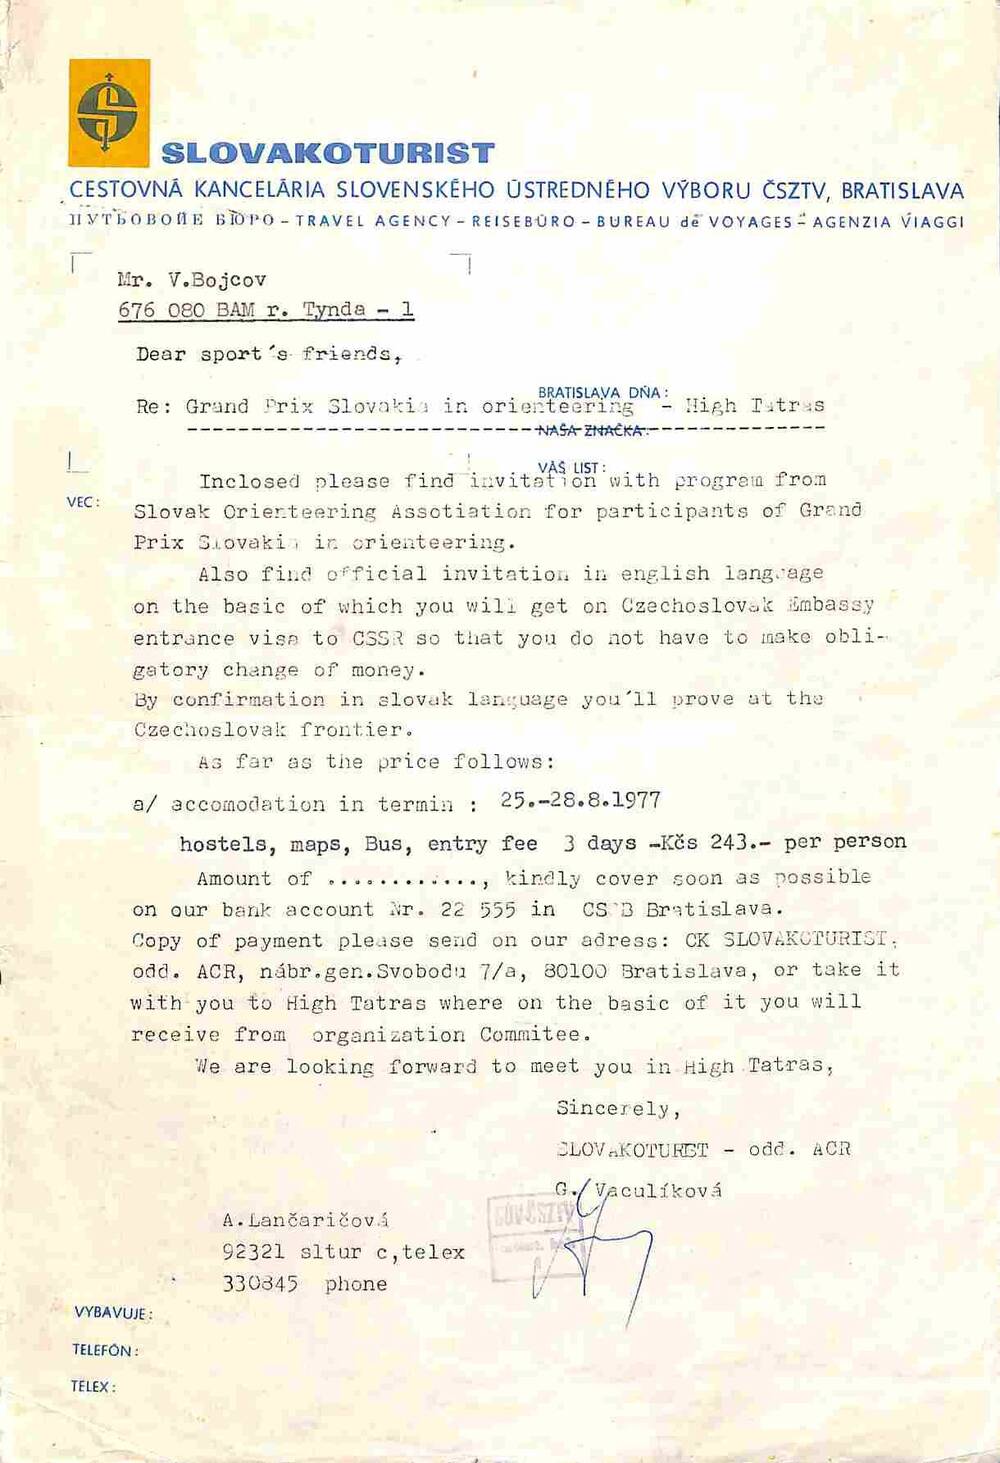 Письмо Бойцову В. из Чехословакии на английском языке с извещением о соревновании по ориентированию 25-28 августа 1977 г.